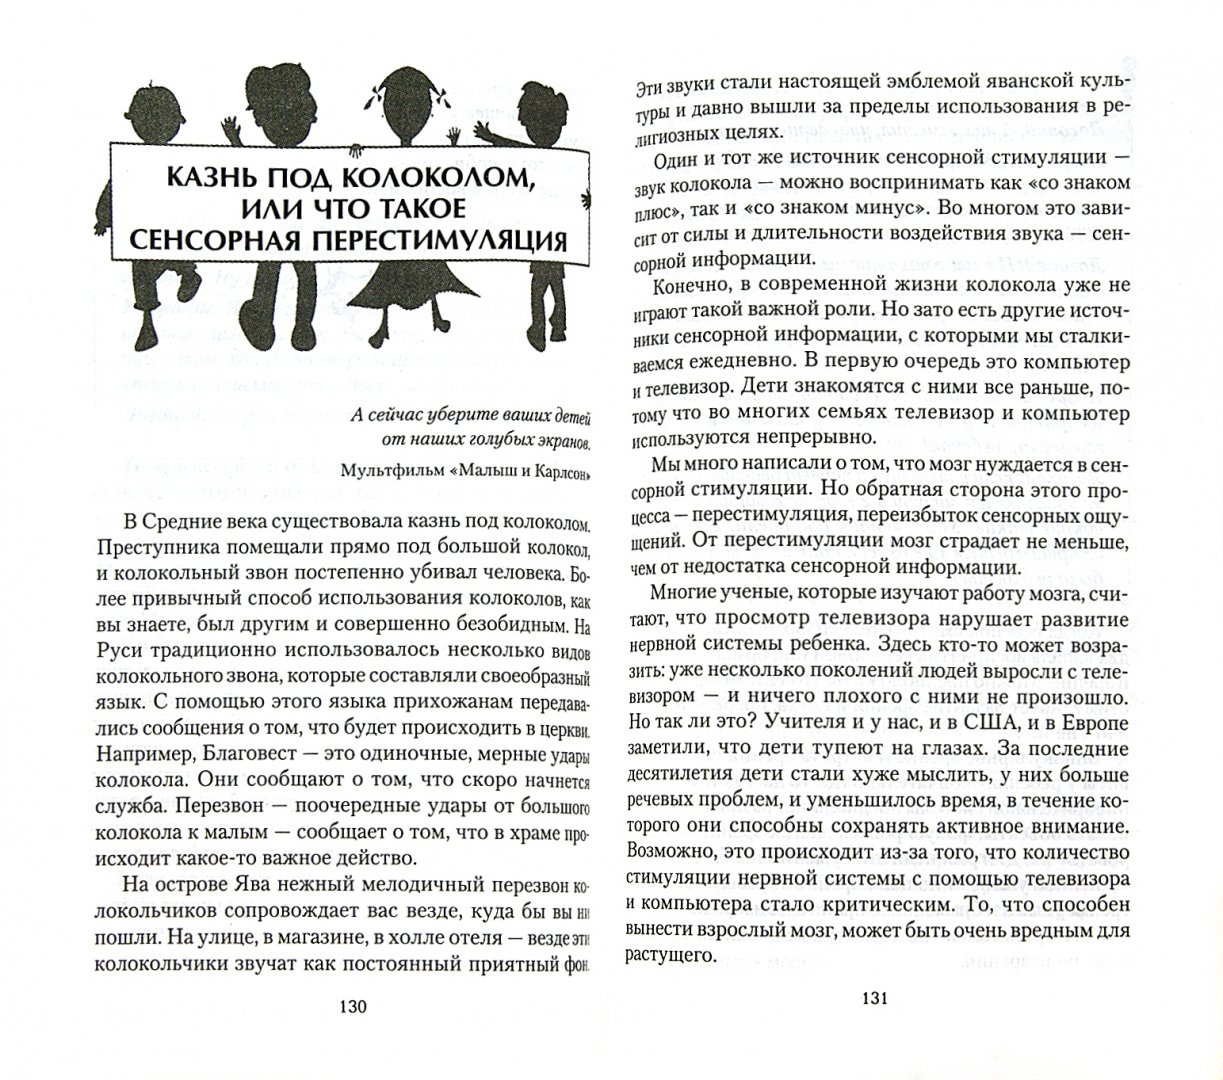 Иллюстрация 1 из 19 для Педагогика, изменяющая мозг. Диалоги невролога и логопеда о развитии детей - Ефимов, Ефимова | Лабиринт - книги. Источник: Лабиринт